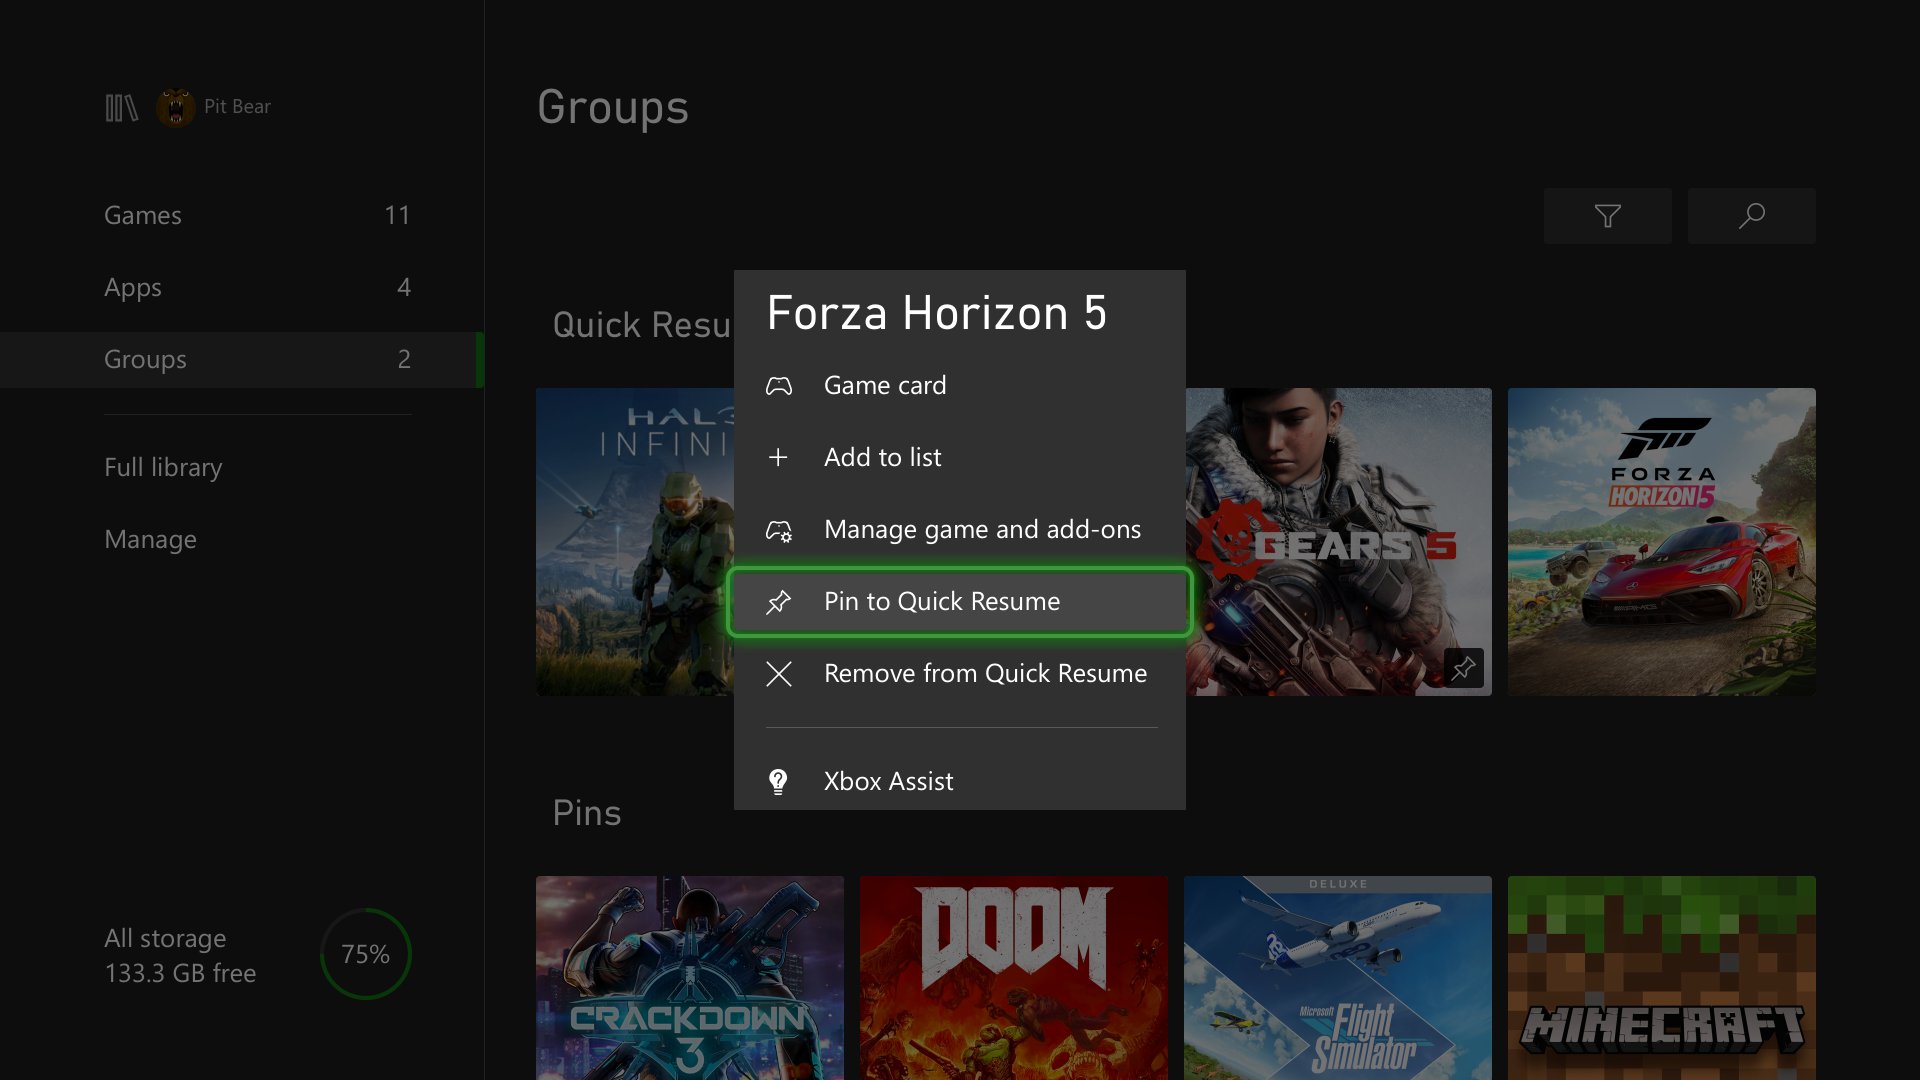 Meu forza horizon 5 baixado pela gamepass não abre - Microsoft Community